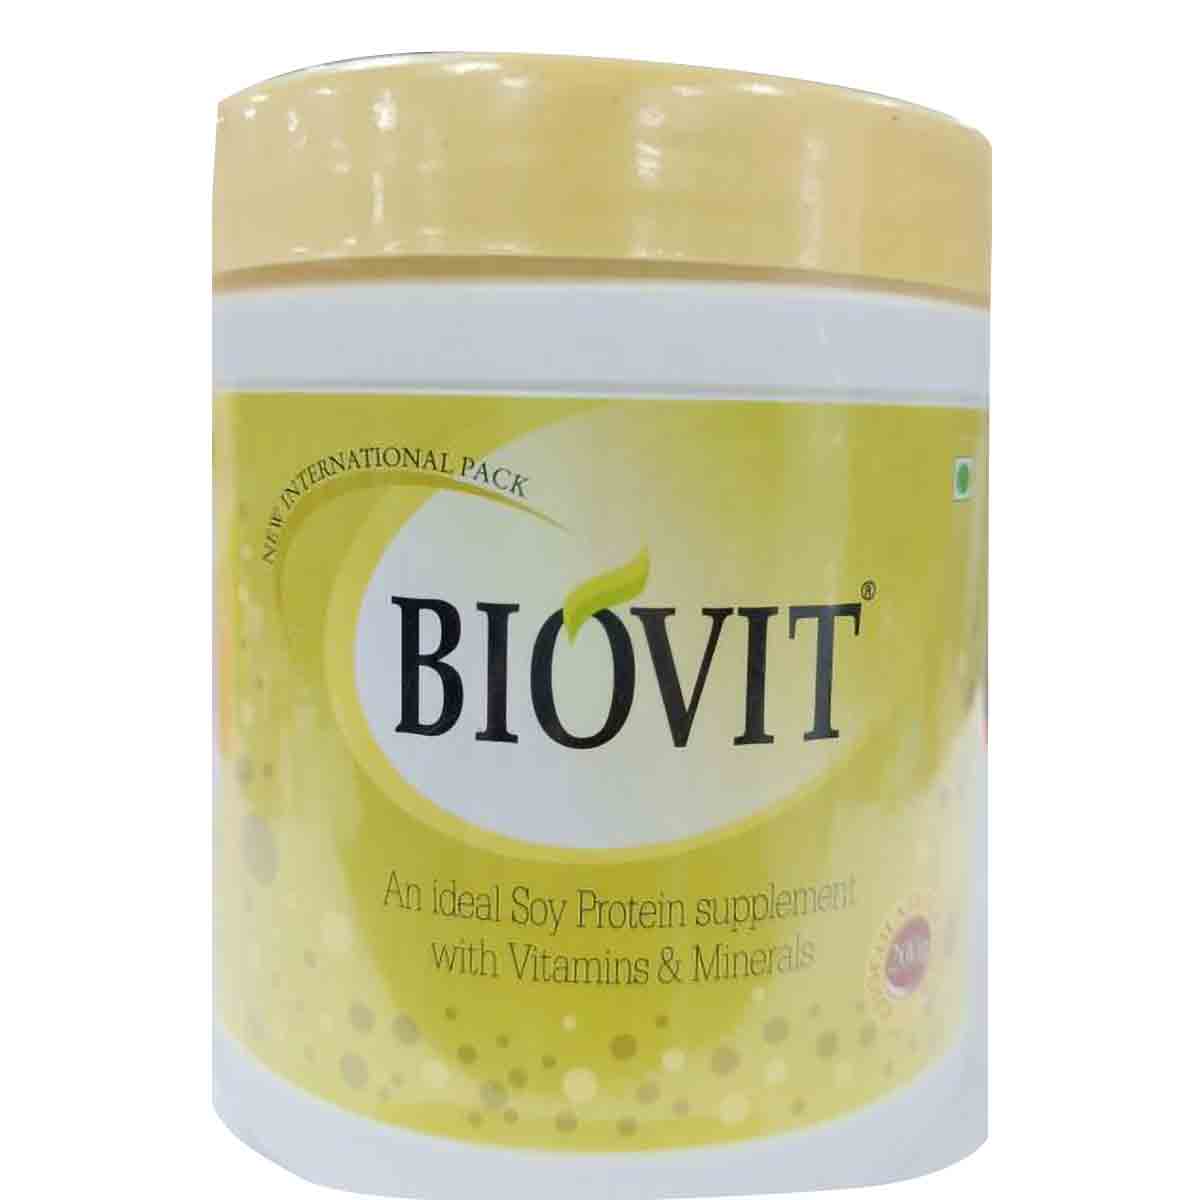 Buy Biovit Powder, 200 gm Online